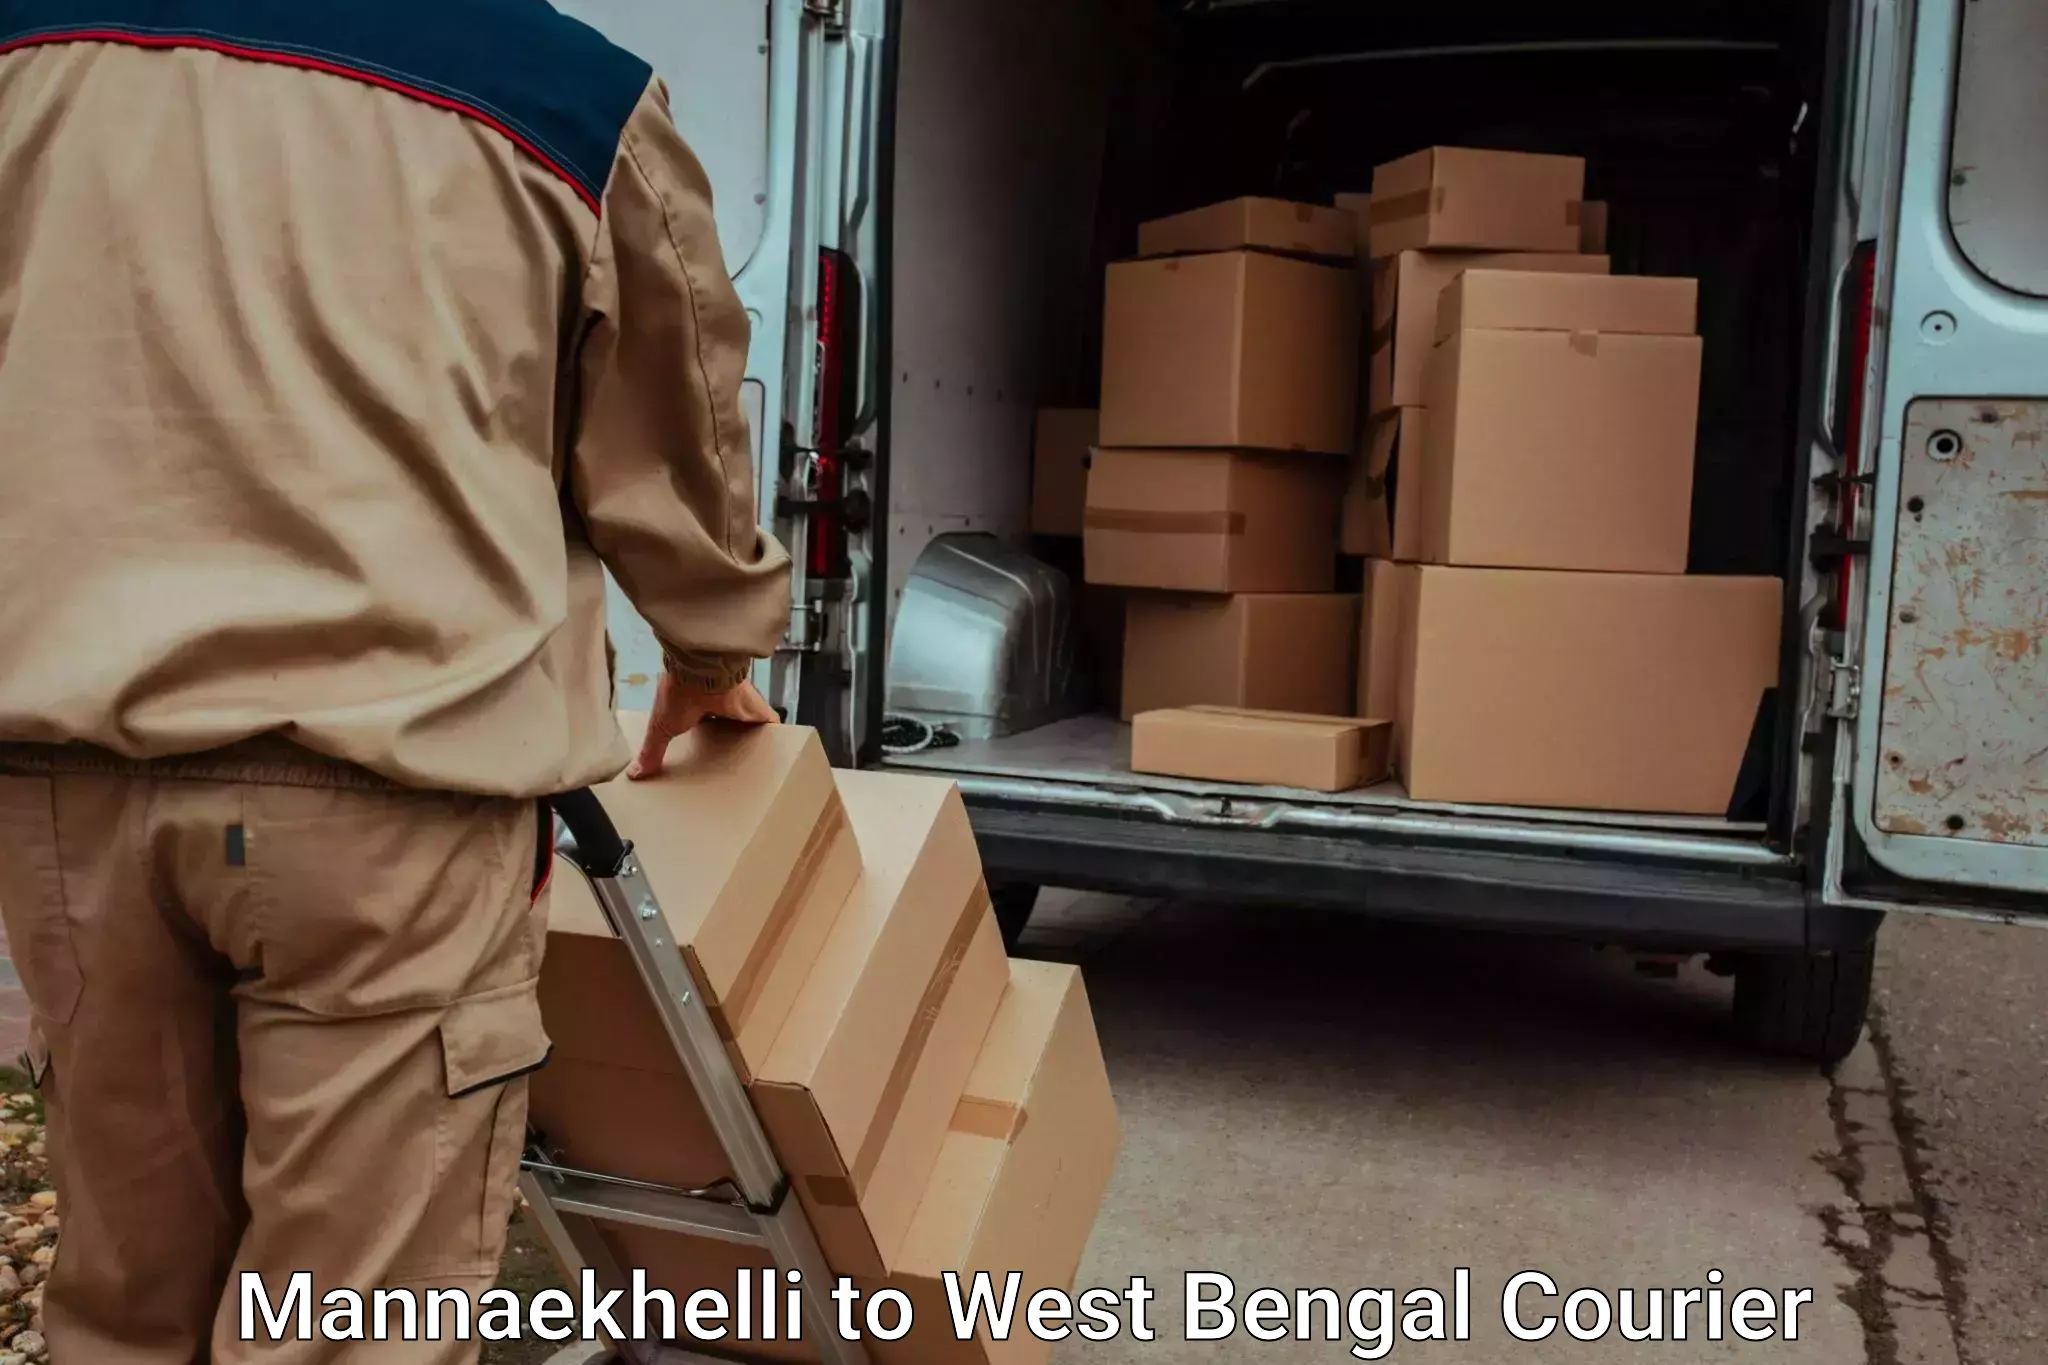 Holiday season luggage delivery Mannaekhelli to Burdwan